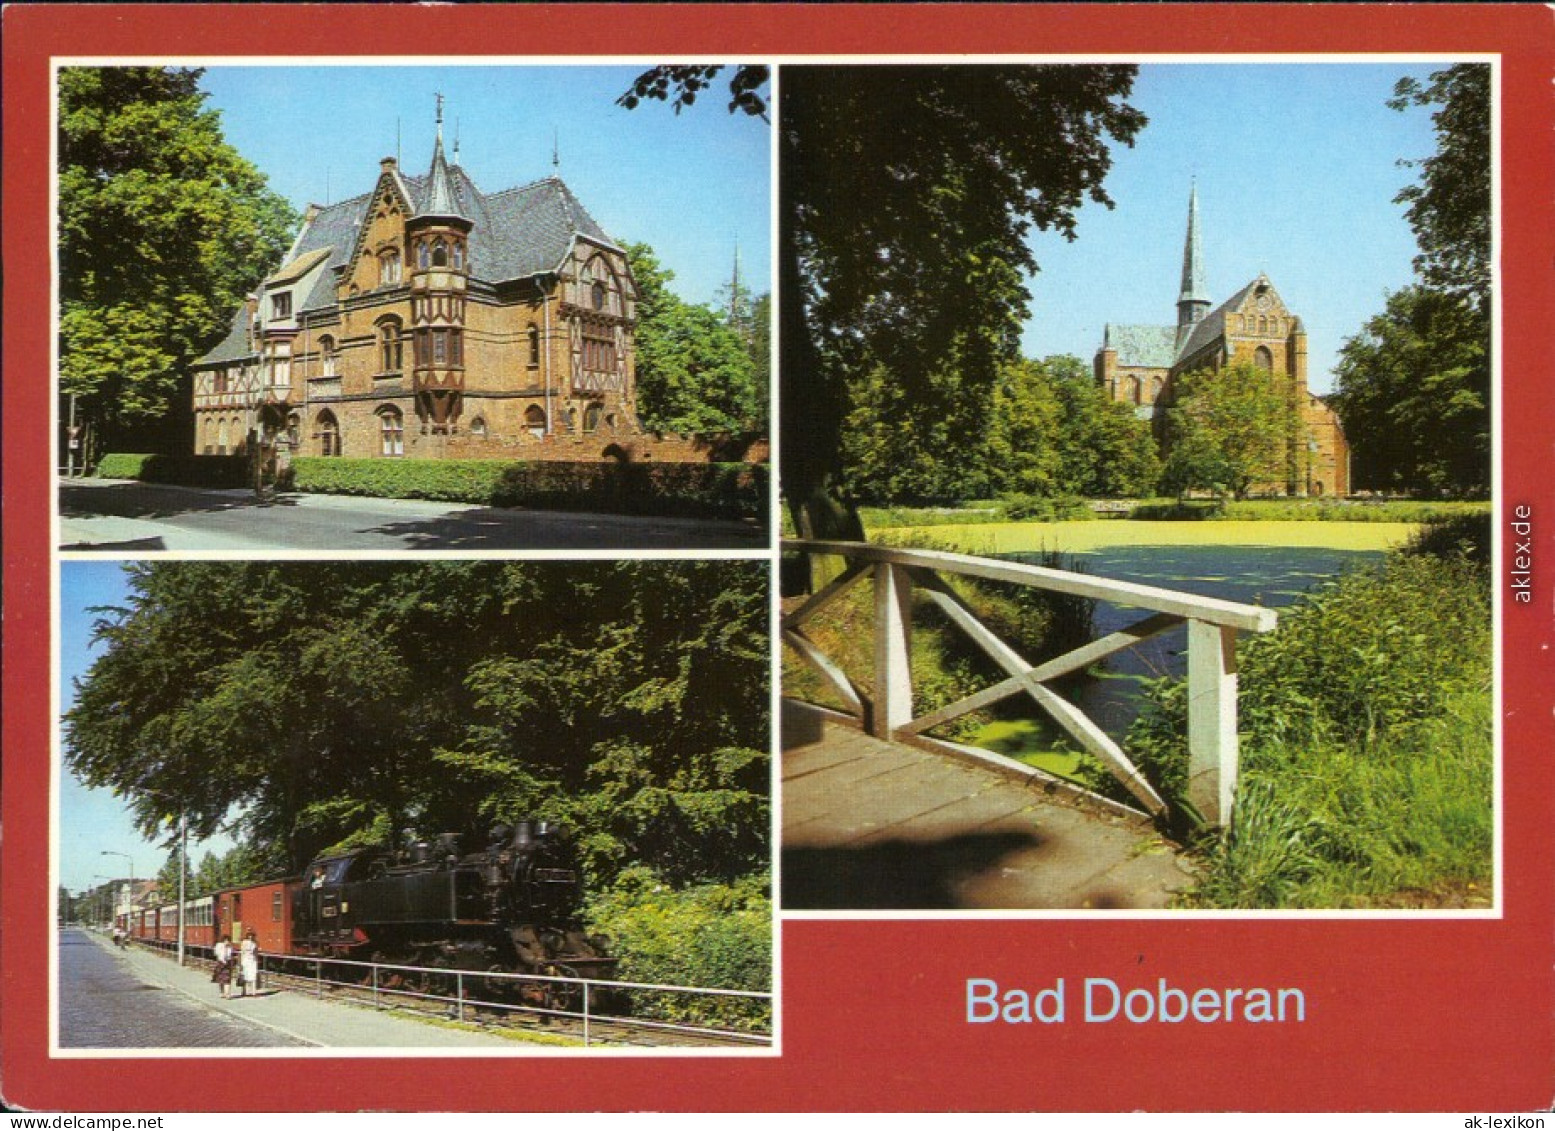 Bad Doberan Stadtmuseum "Möckelhaus", Molli - Schmalspurbahn, Münster 1987 - Bad Doberan